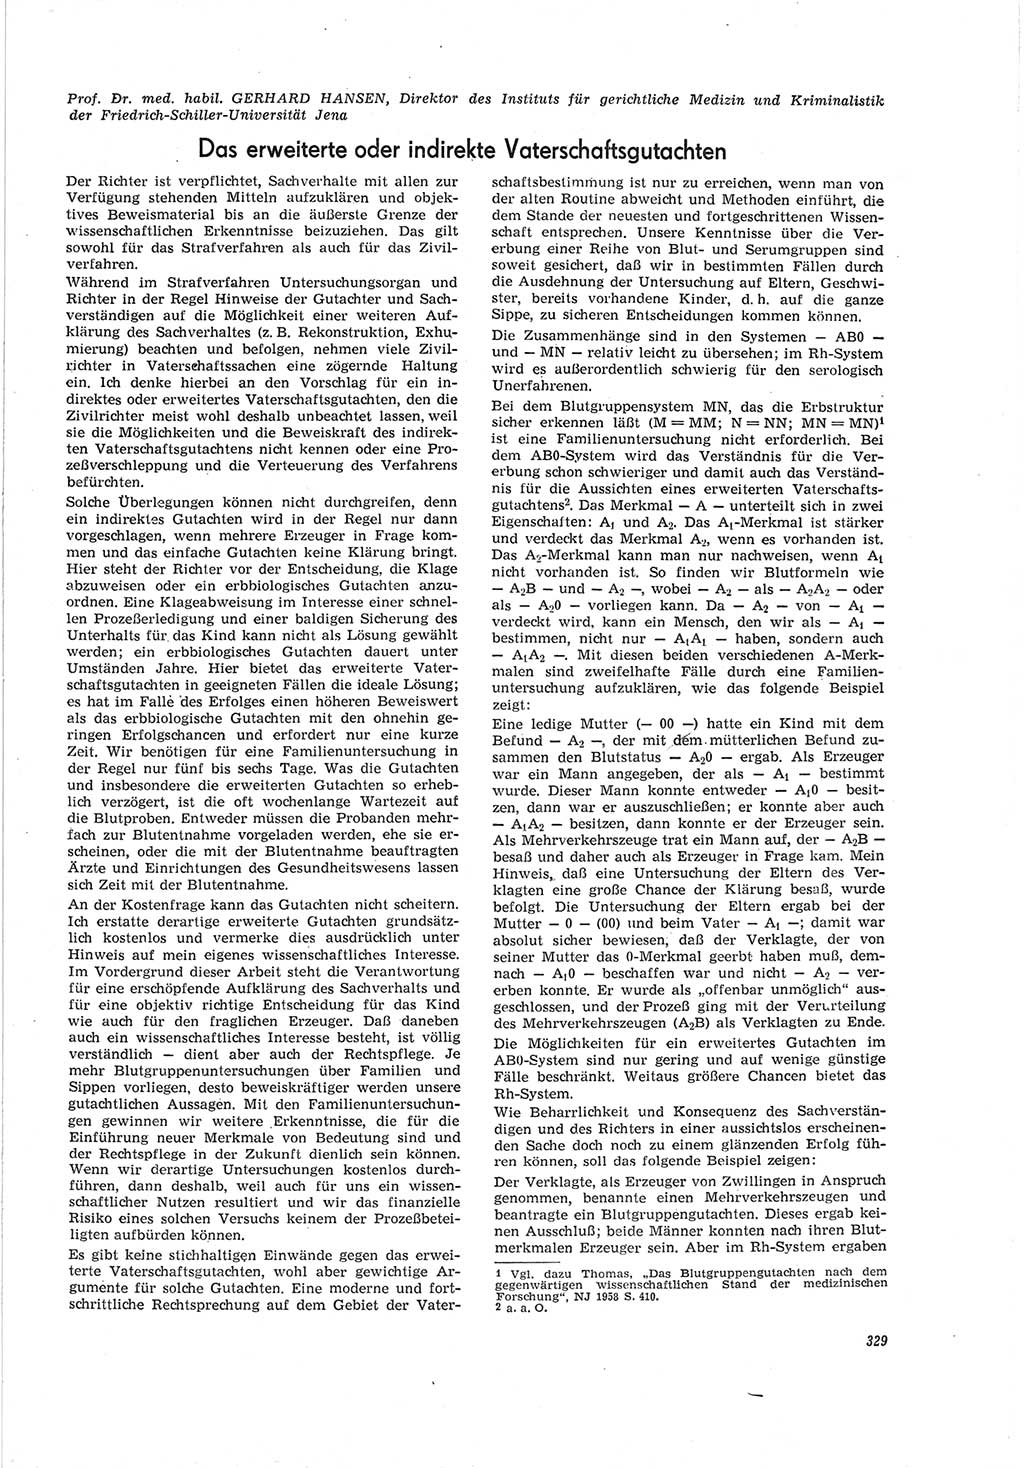 Neue Justiz (NJ), Zeitschrift für Recht und Rechtswissenschaft [Deutsche Demokratische Republik (DDR)], 19. Jahrgang 1965, Seite 329 (NJ DDR 1965, S. 329)